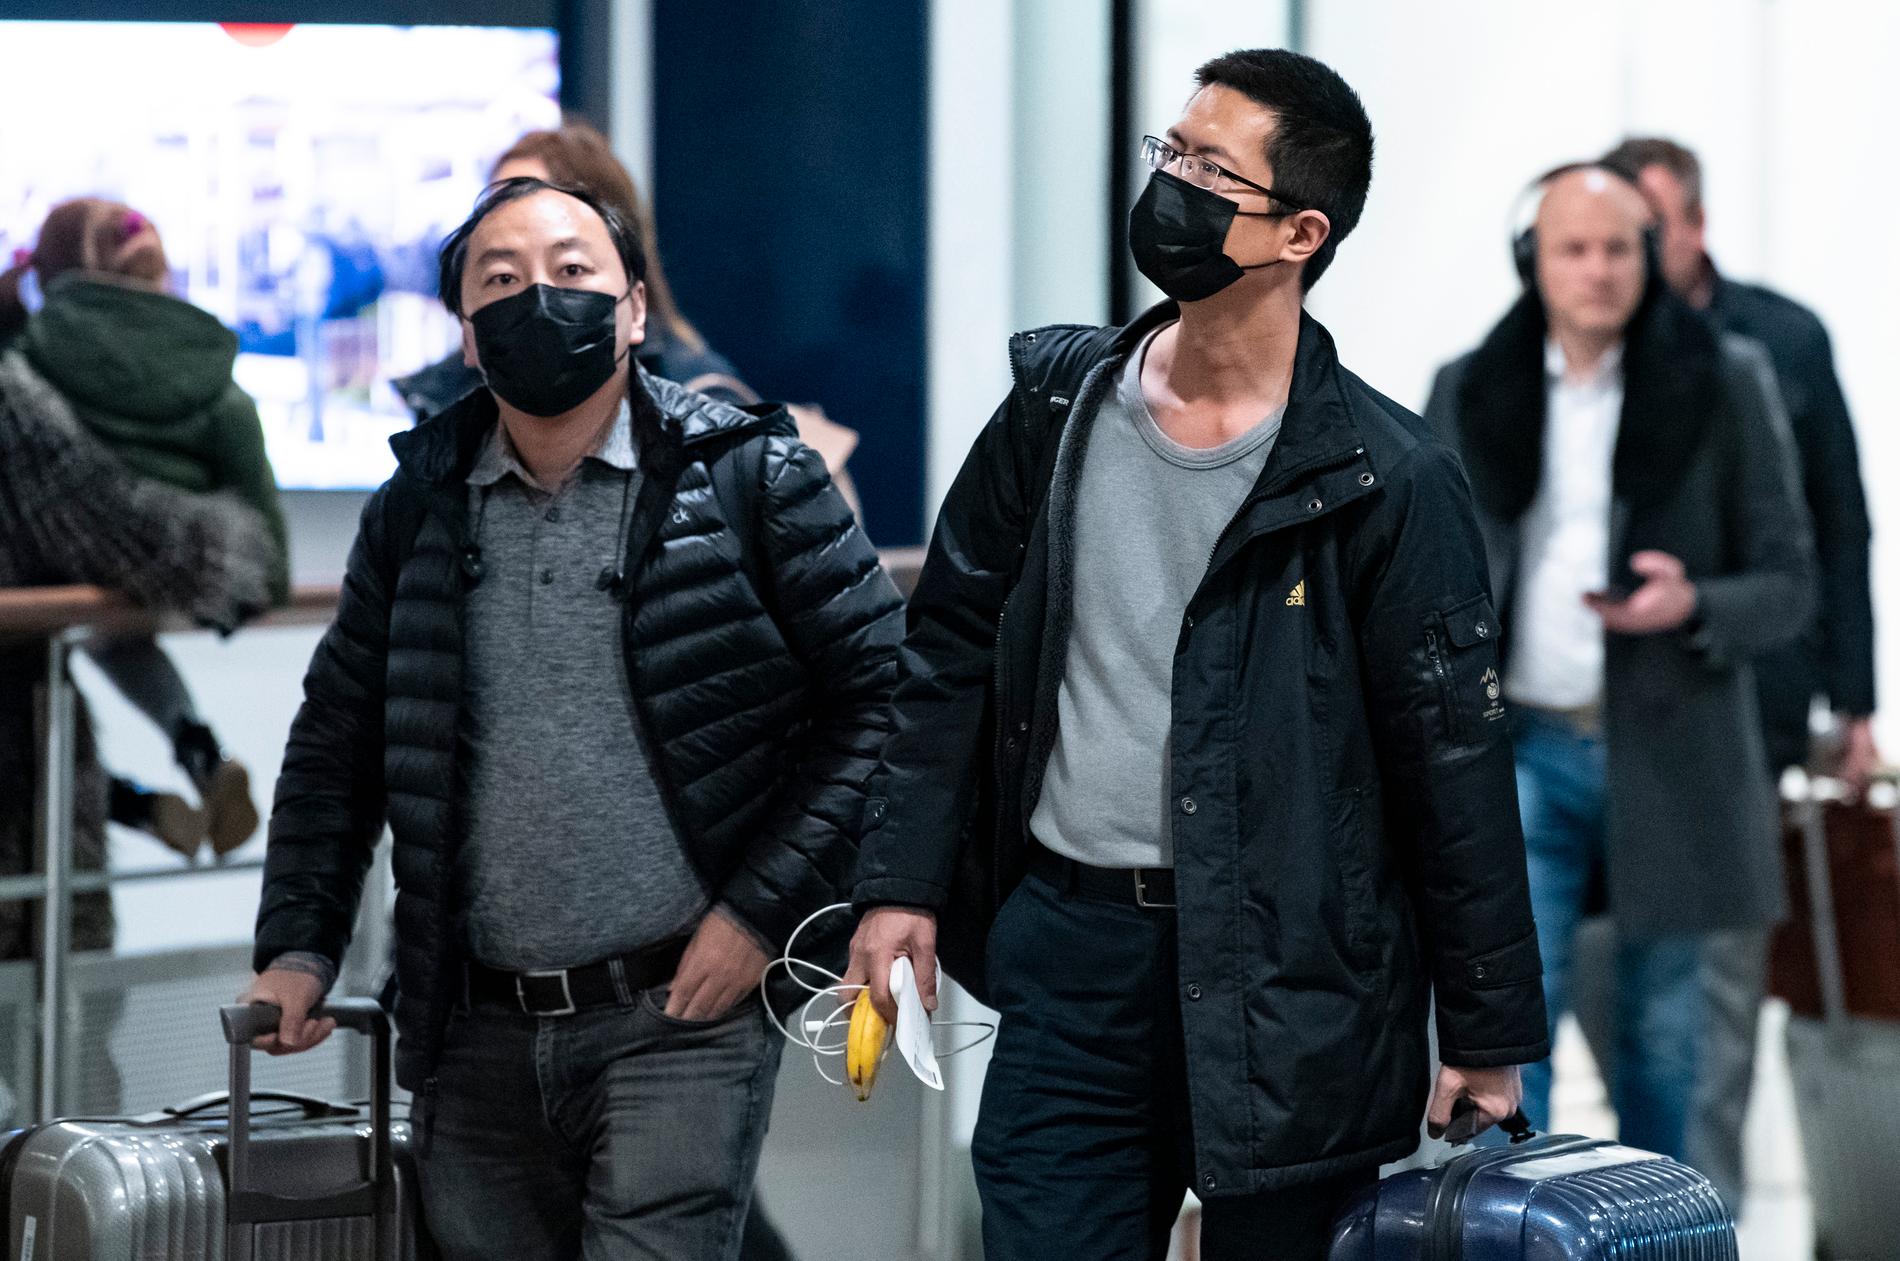 Munskydd eller andningsskydd på passagerare som ankommer Köpenhamns flygplats Kastrup när coronaviruset fortsätter sprida sig i värden. Flygplatsen uppger att de har tappat var tredje resenär sedan utbrottet.